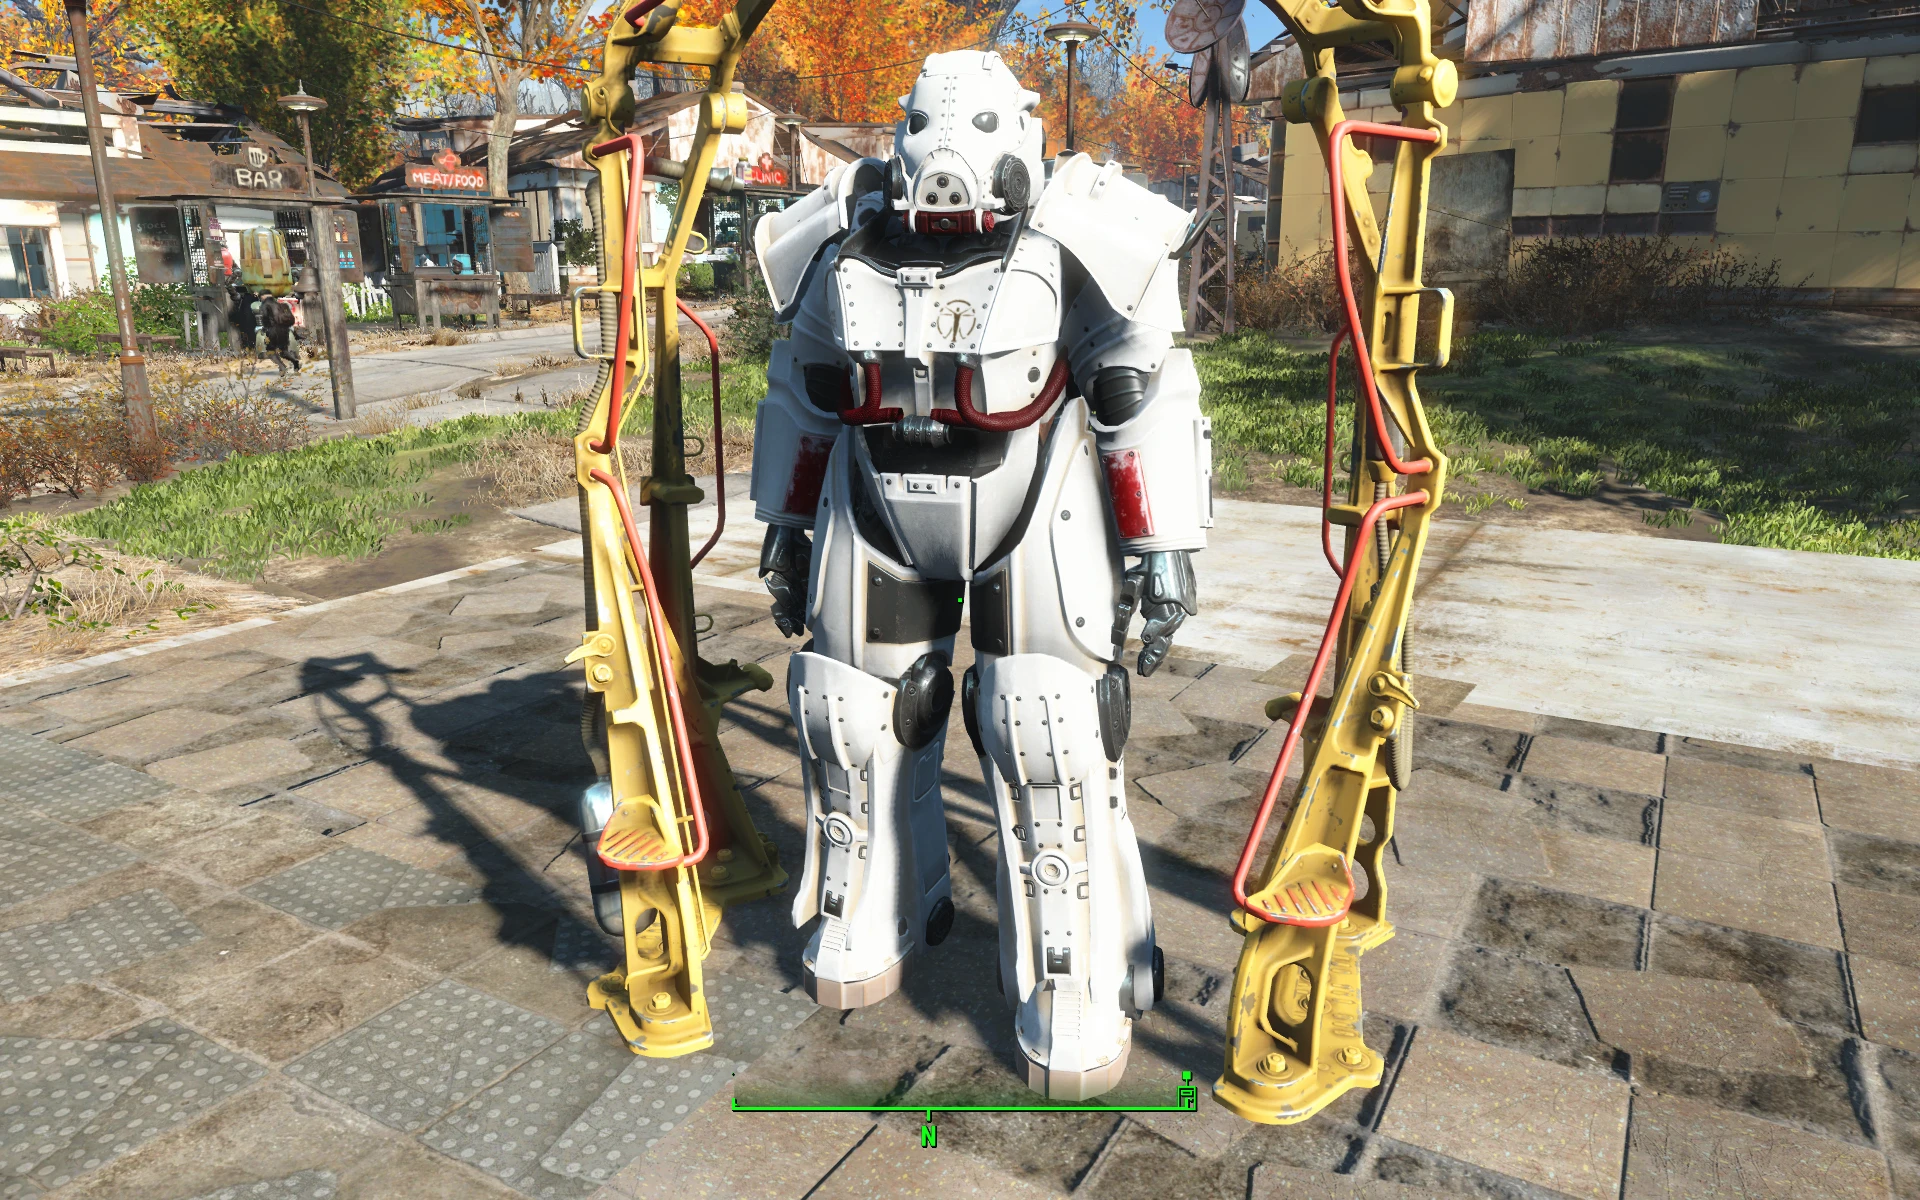 institute power armor mod